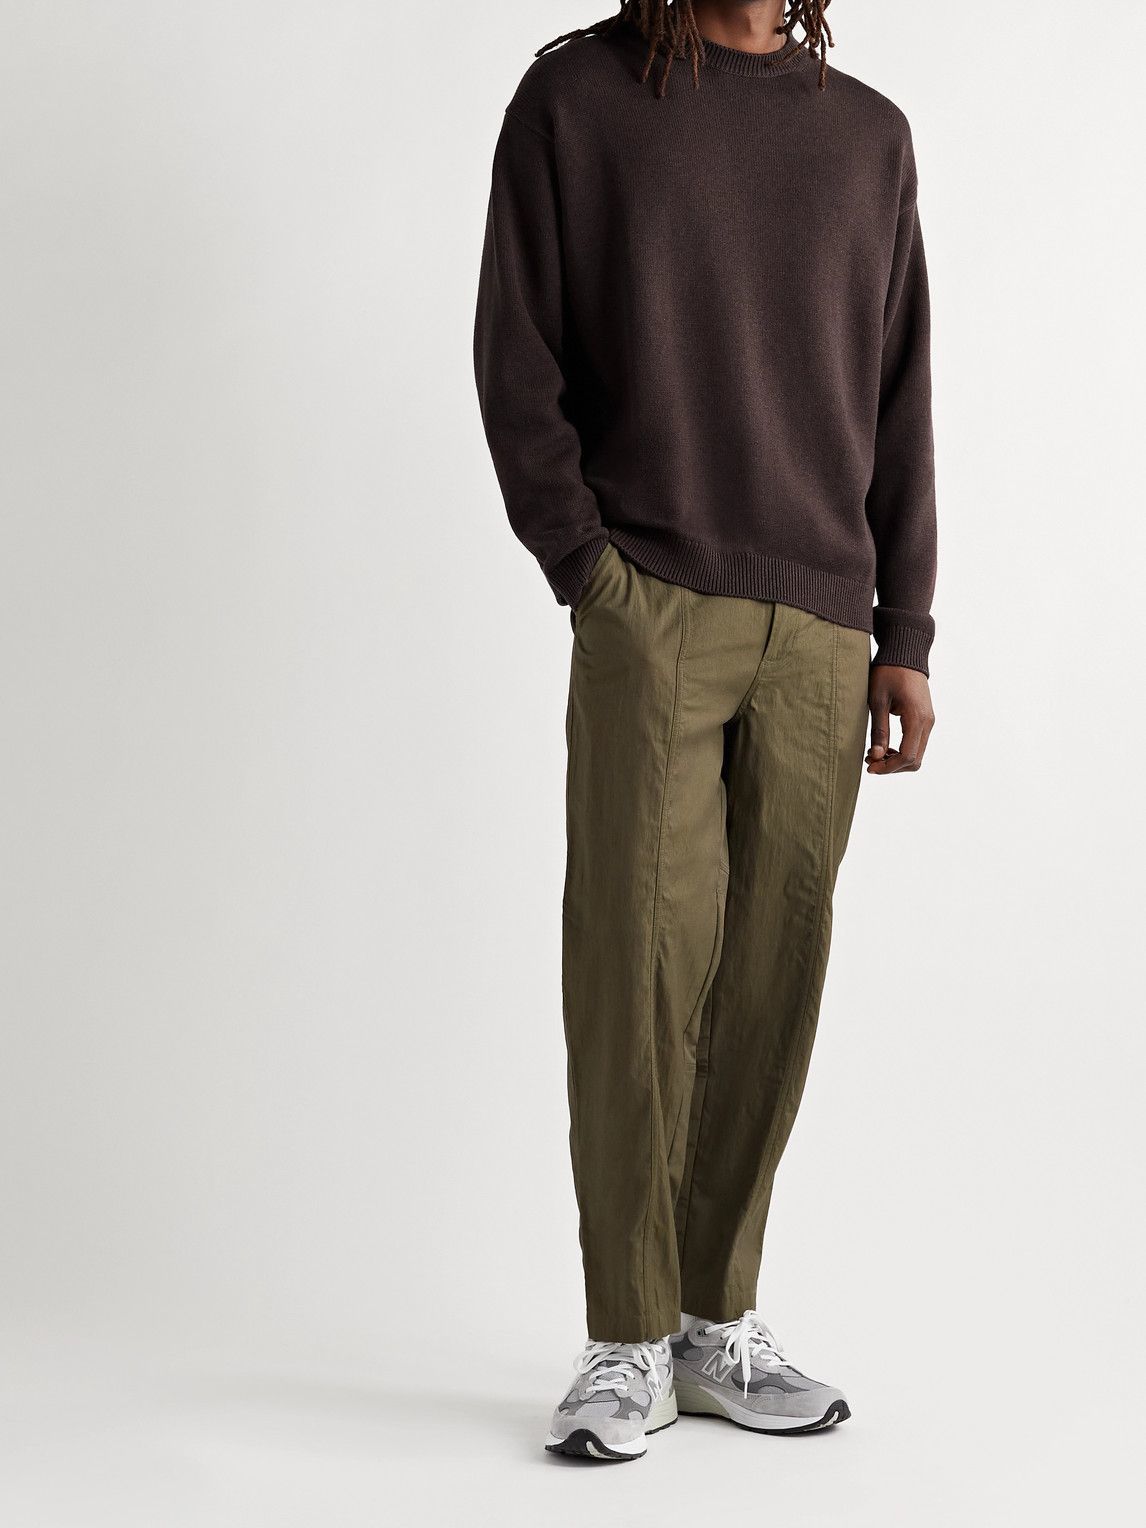 Studio Nicholson - Nimbus Cotton and Merino Wool-Blend Sweater 